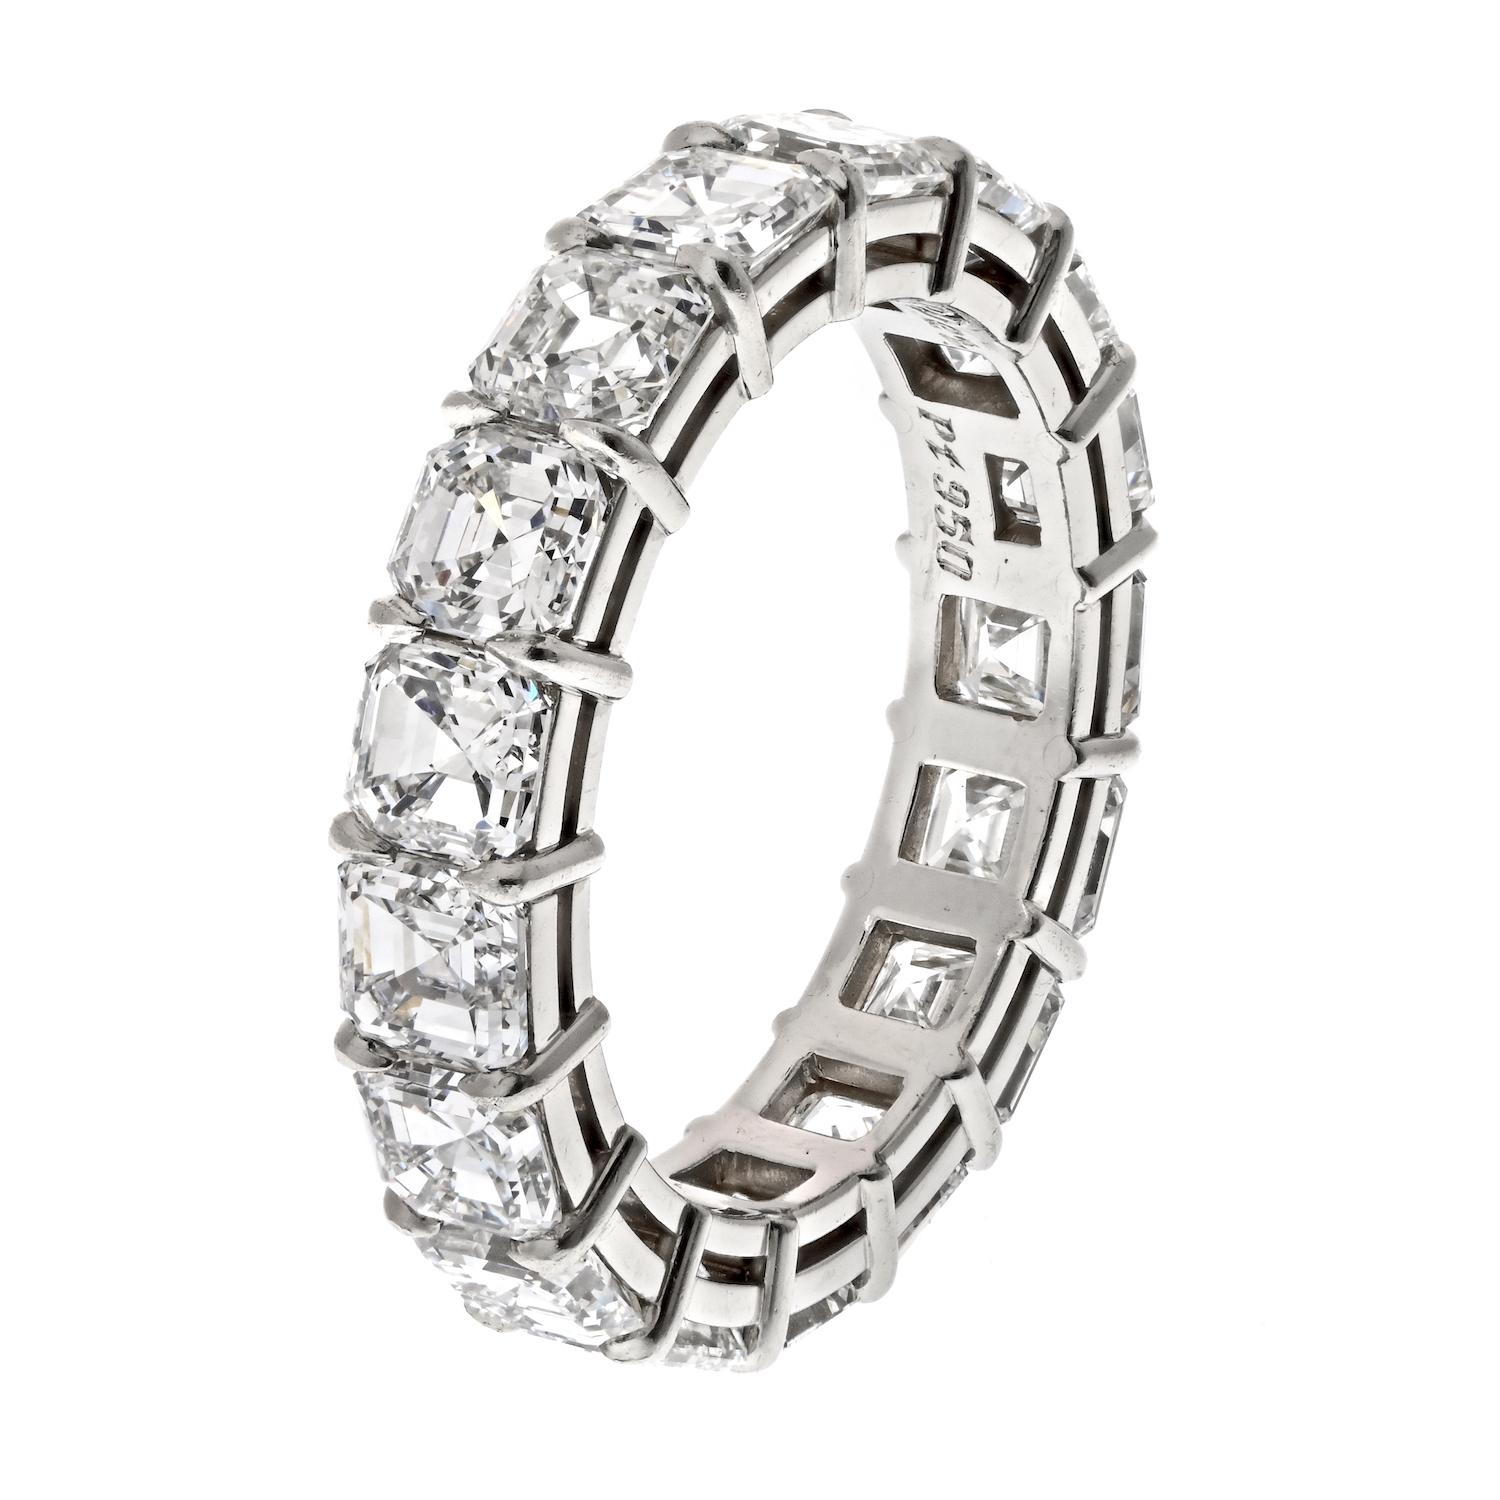 Dieses atemberaubende Ewigkeitsarmband aus Platin mit Diamanten im Asscher-Schliff ist ein echtes Statement. Mit einem Gesamtkaratgewicht von 7,82cttw und 17 Diamanten der Farbe F-G und der Reinheit VS1-VS2 strahlt dieser Ring Luxus und Eleganz aus.